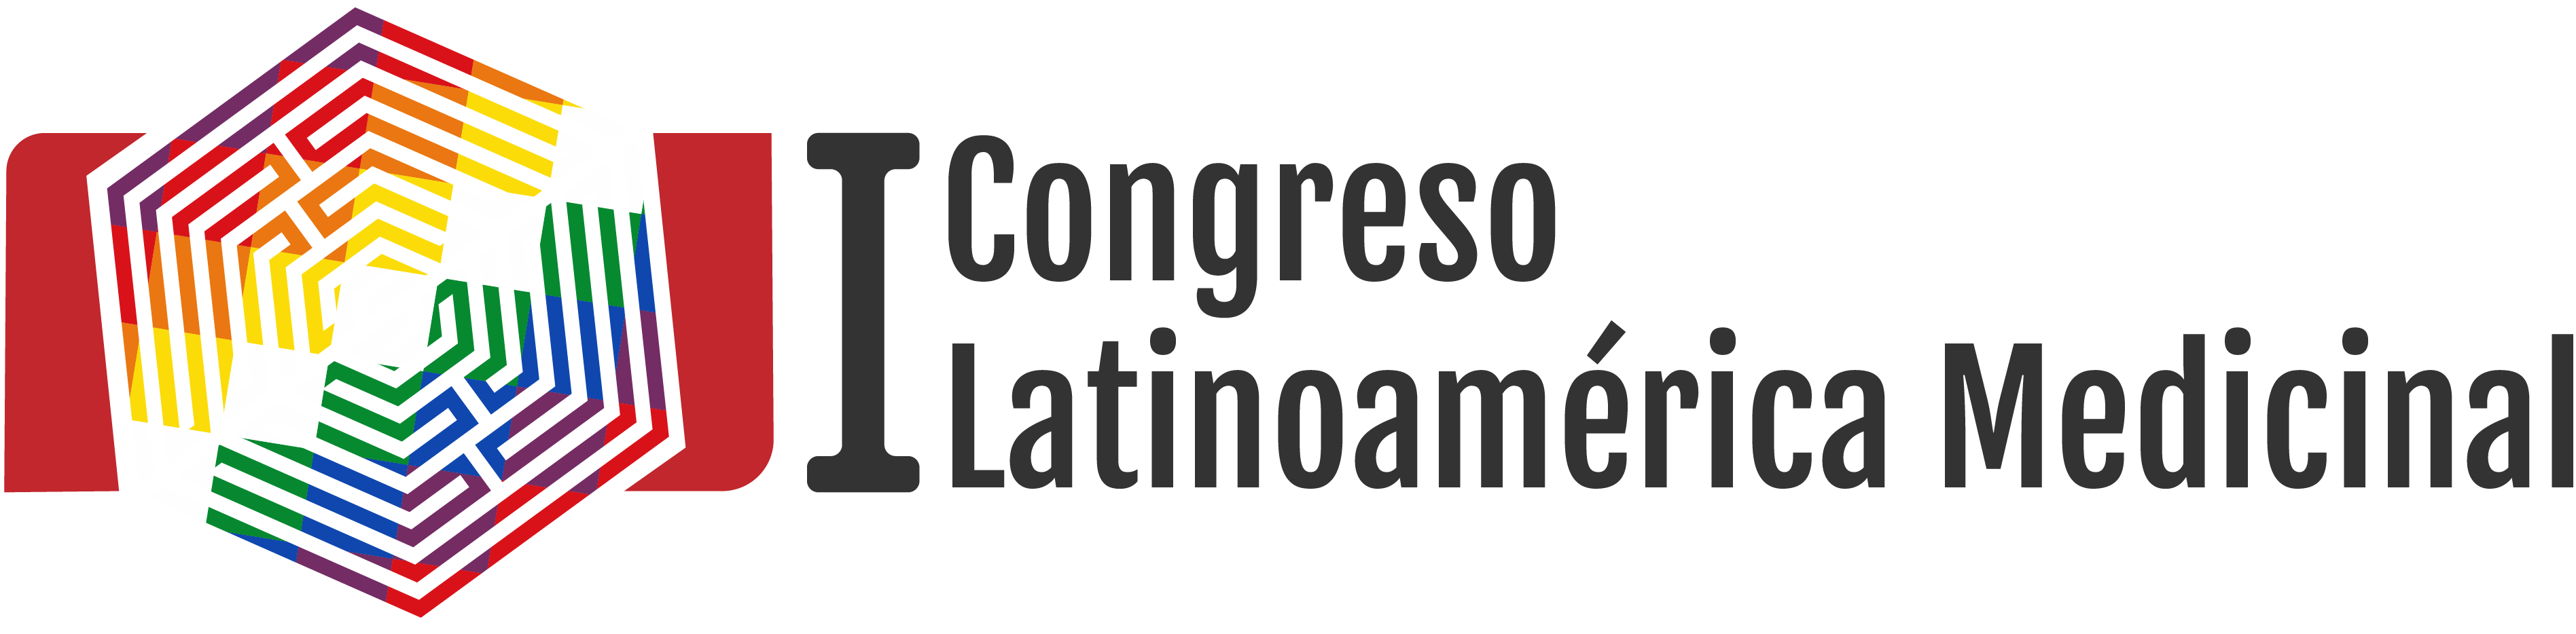 I Congreso Latinoamérica Medicinal